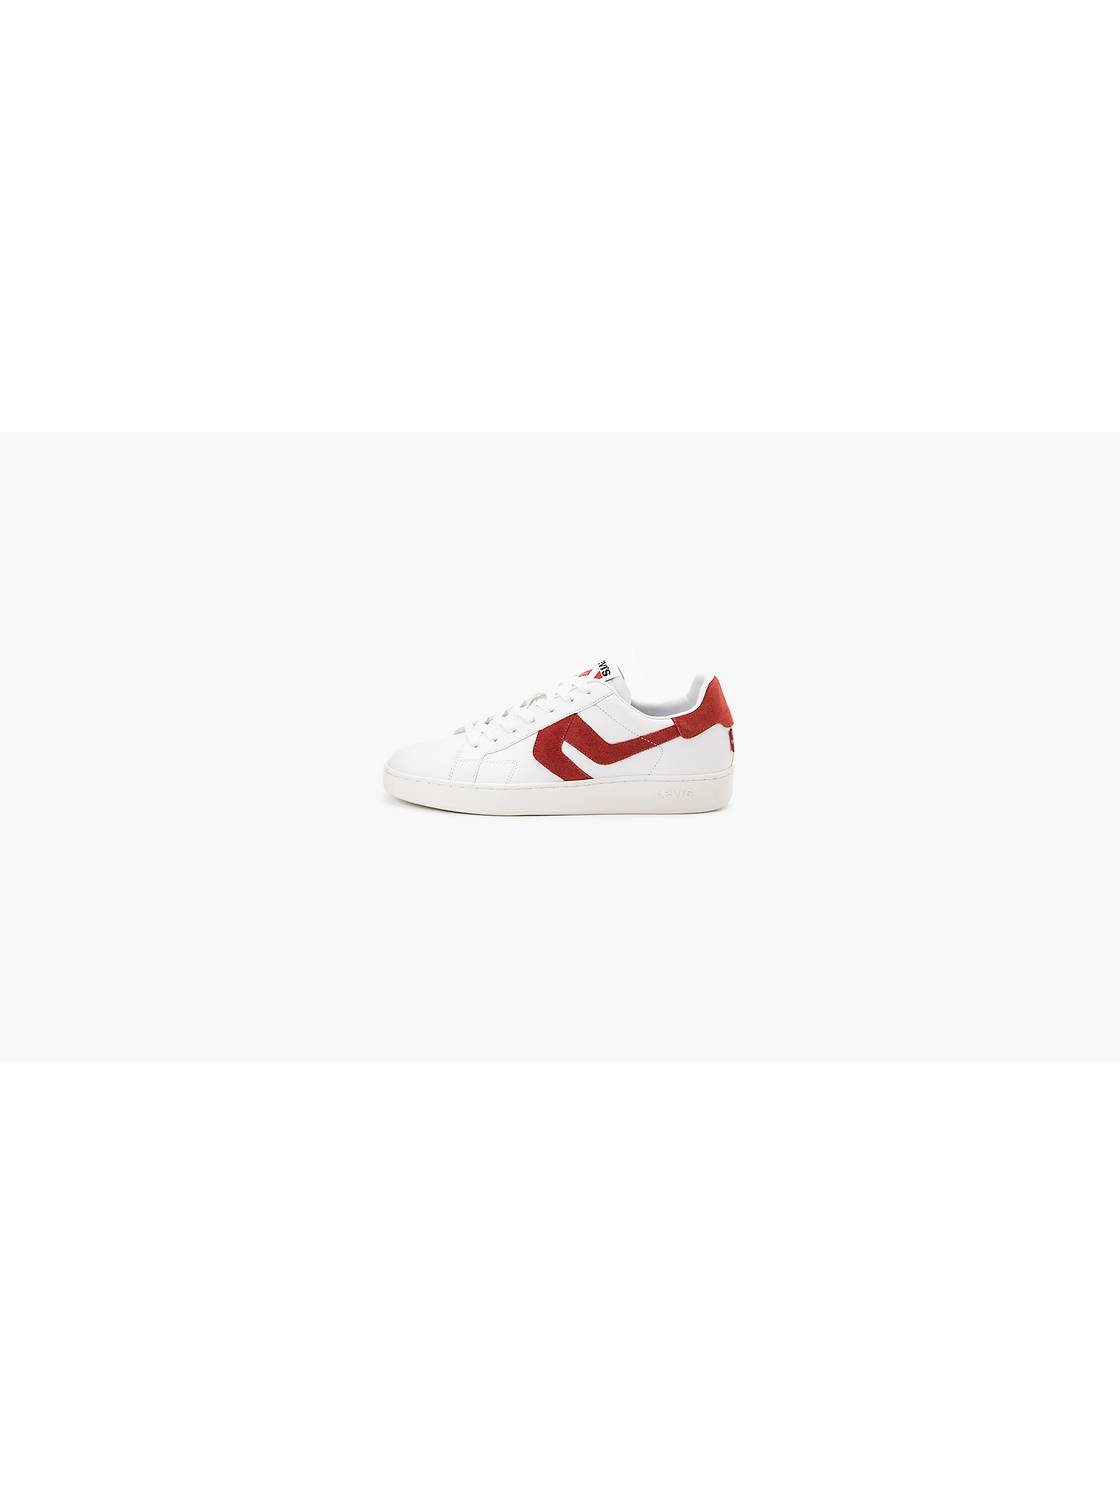 Levi's Levis Jordy 3 Fashion Sneaker, $35, .com